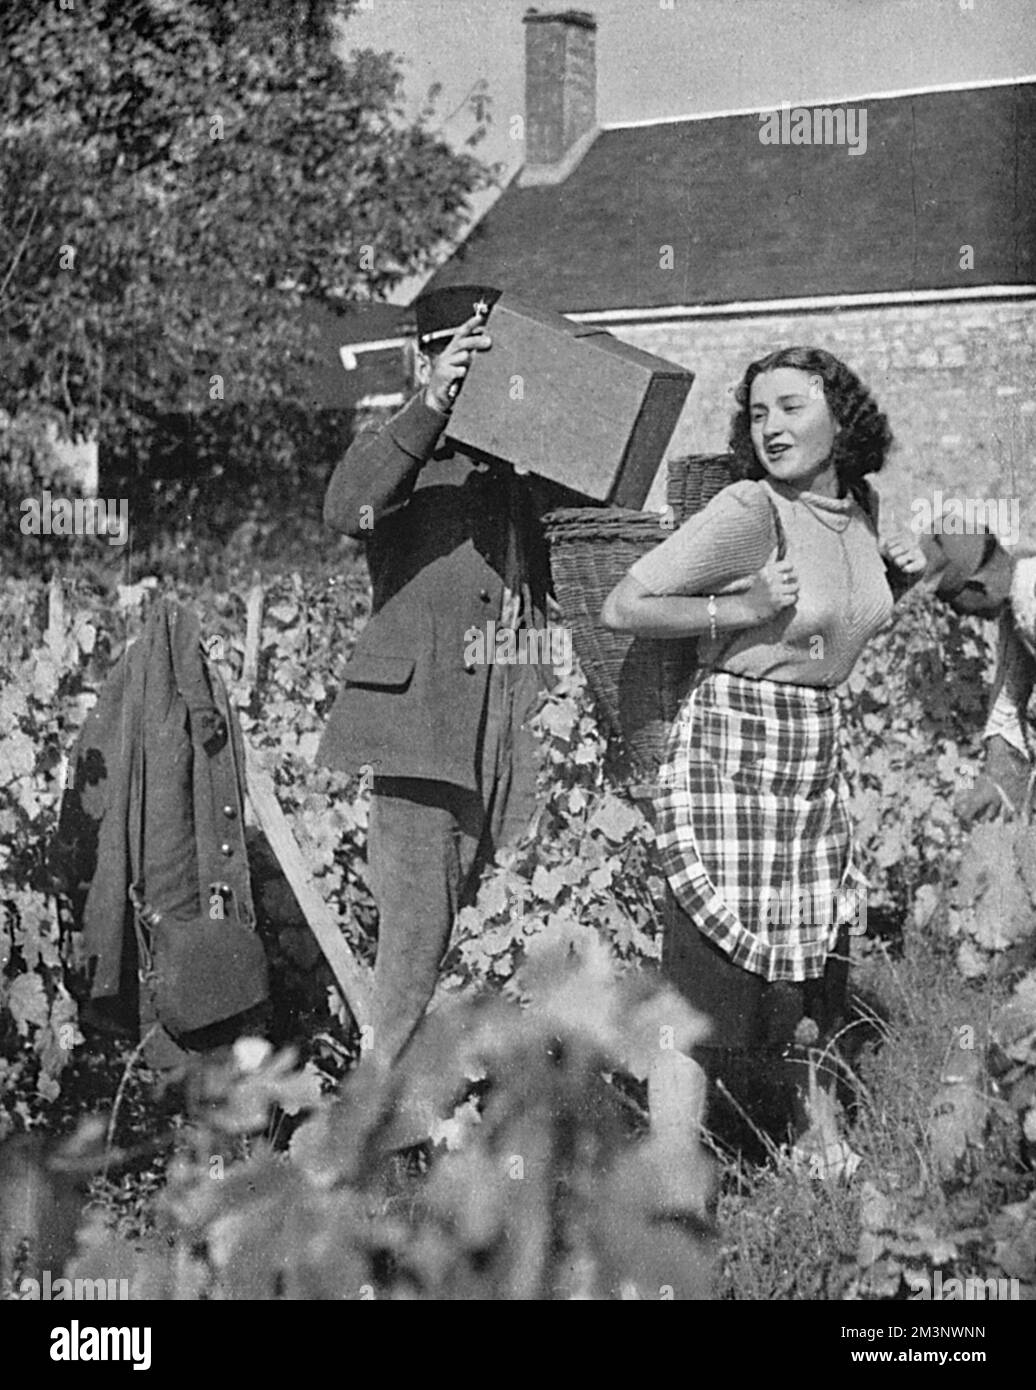 Un soldat français aide sa jeune sœur à se rassembler en vignes, ayant reçu un congé spécial de l'armée pendant la récolte. Date: 1939 Banque D'Images